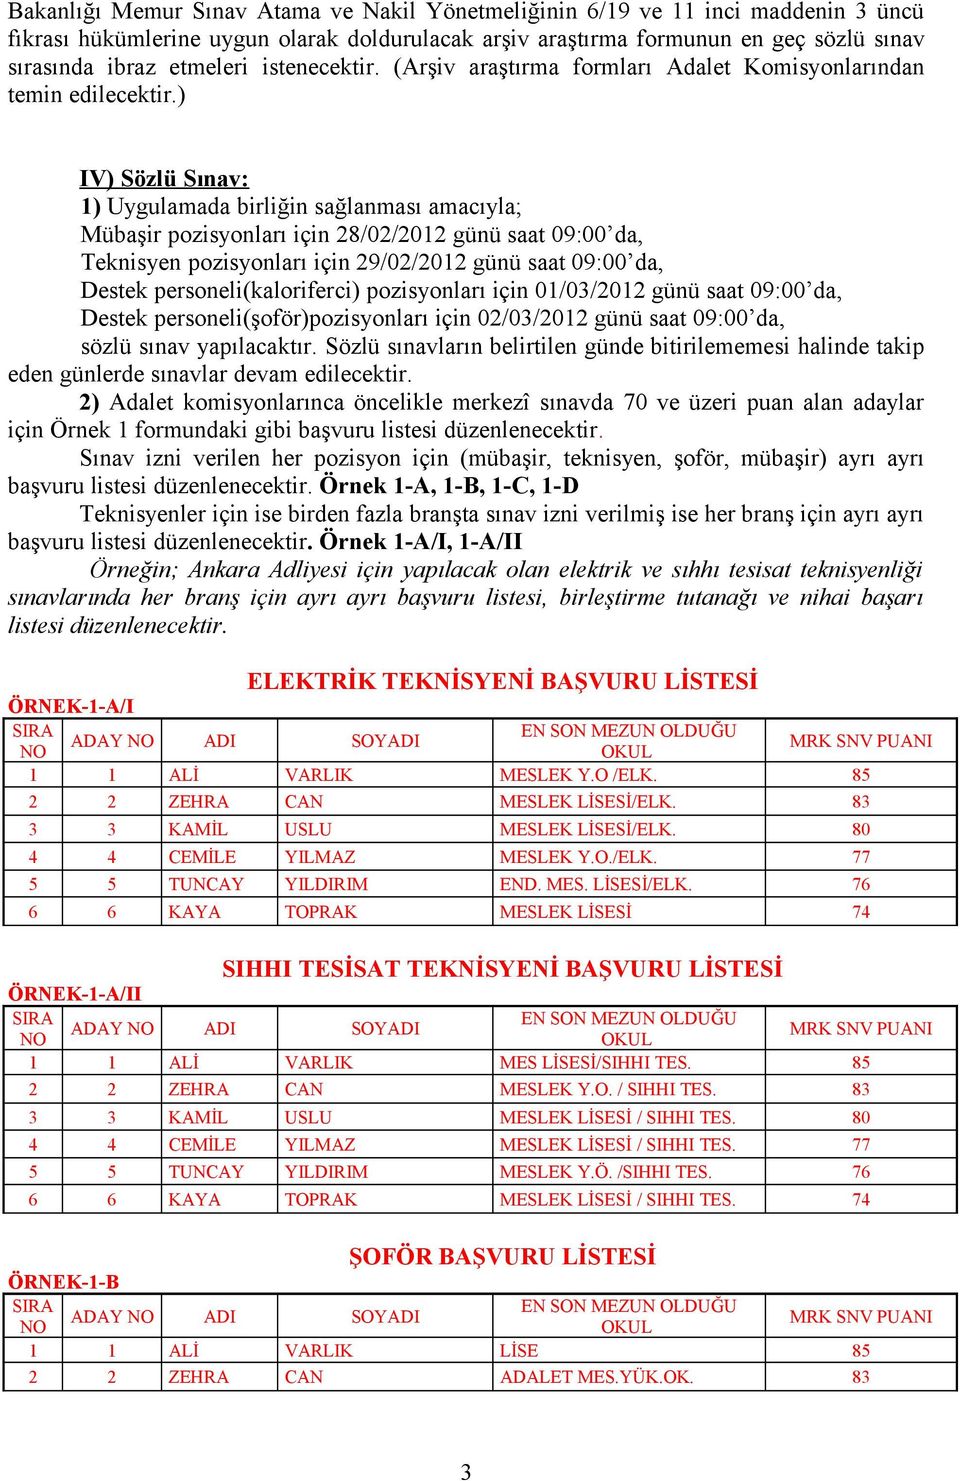 ) IV) Sözlü Sınav: 1) Uygulamada birliğin sağlanması amacıyla; Mübaşir pozisyonları için 28/02/2012 günü saat 09:00 da, Teknisyen pozisyonları için 29/02/2012 günü saat 09:00 da, Destek